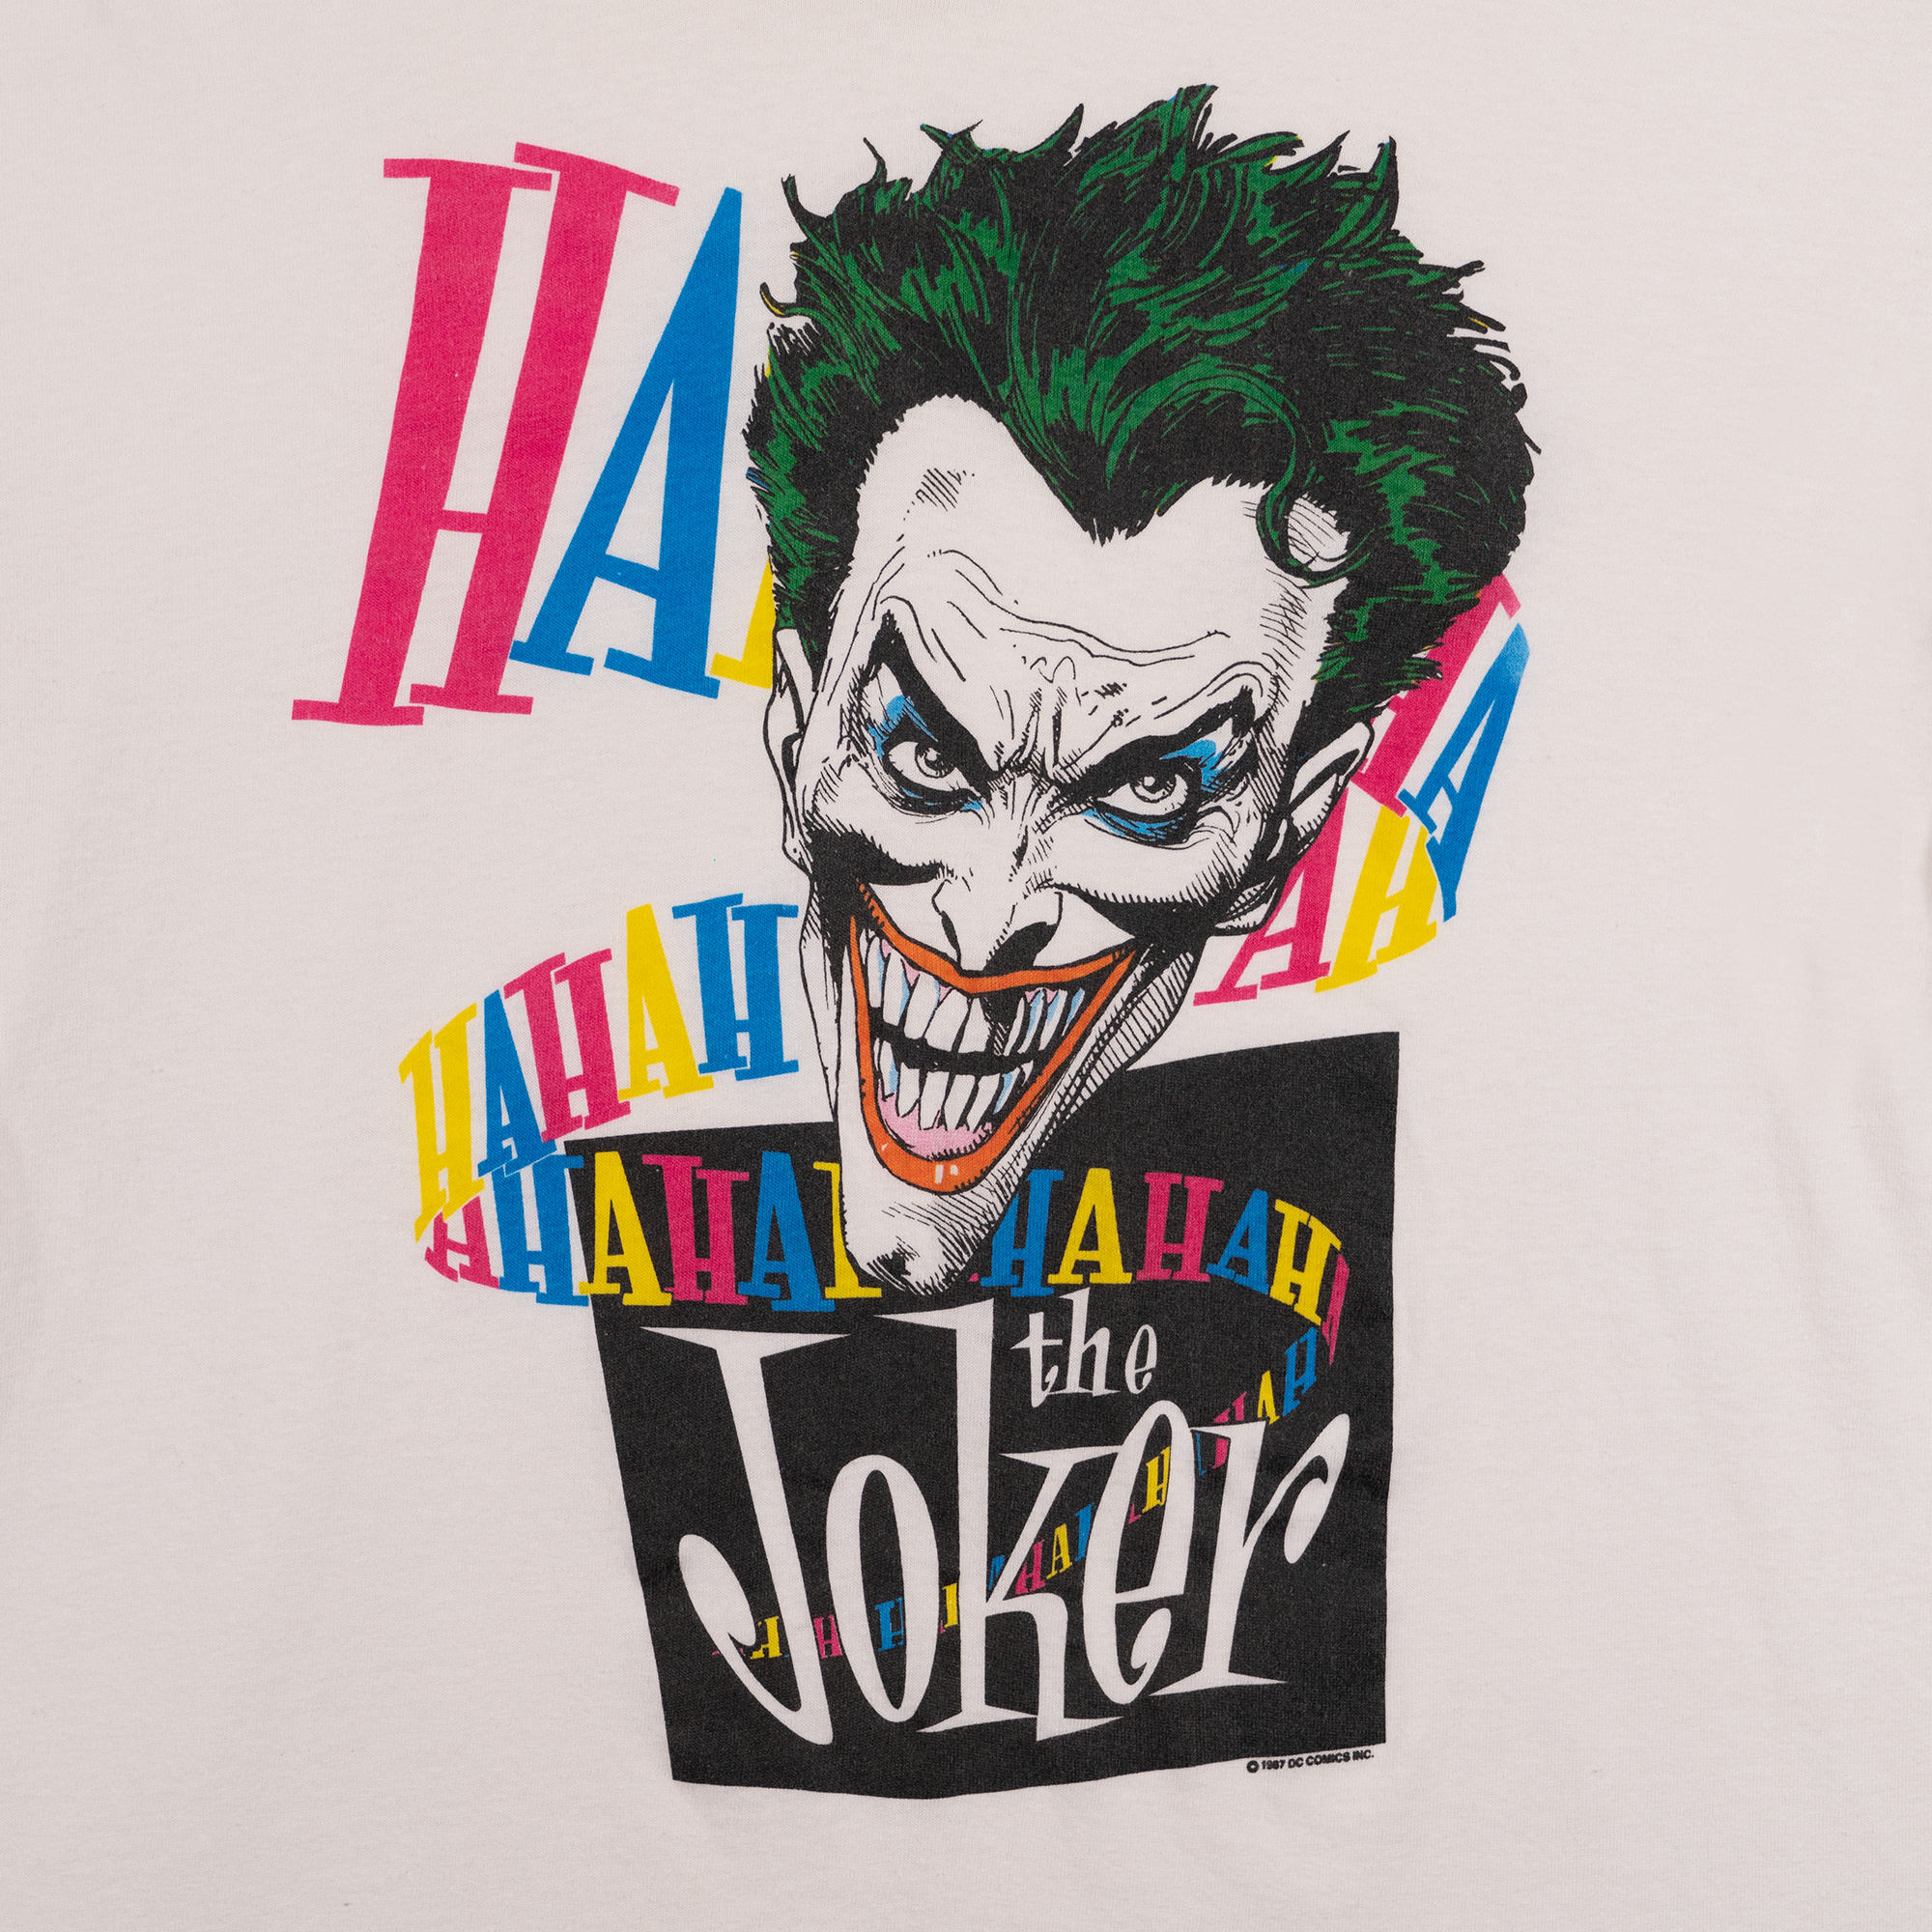 The Joker 1987 DC Comics Tee White-PLUS